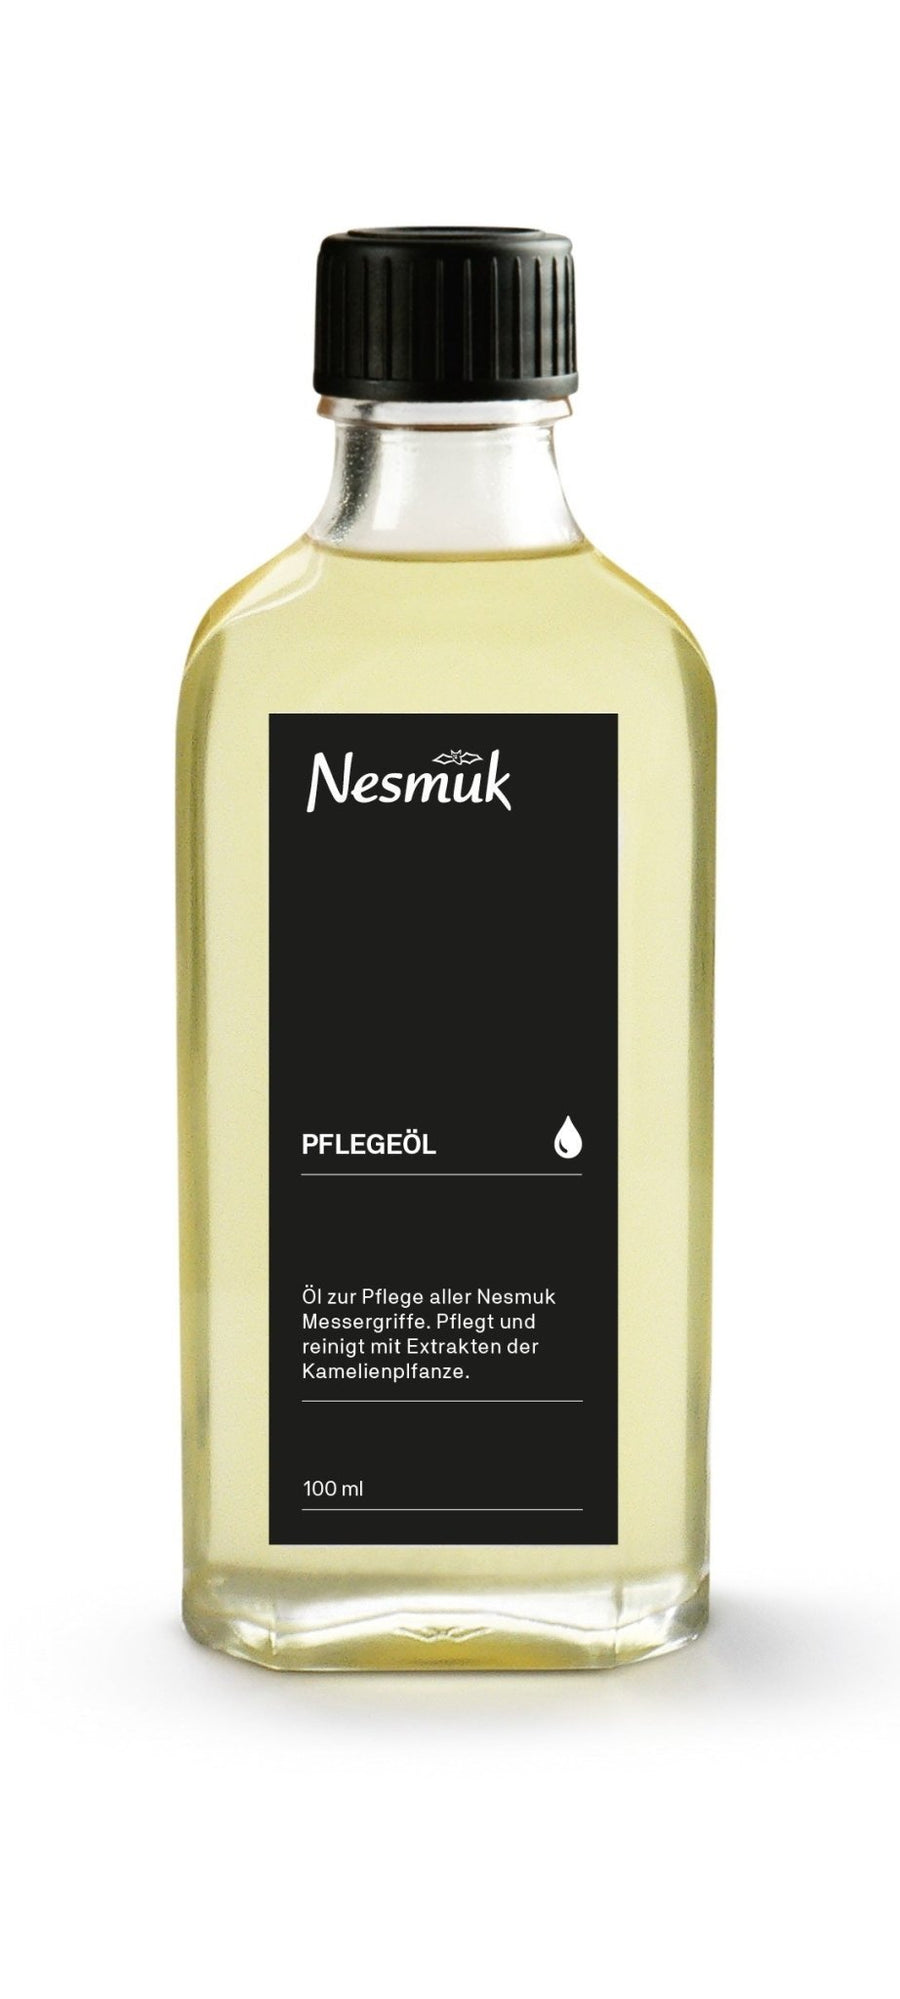 Eine Flasche Nesmuk Accessoires Chinesisches Kamelienöl 100 ml, vermutlich ein Pflegeöl zur Pflege mit chinesischem Kamelienöl, mit schwarzem Etikett, vor weißem Hintergrund.